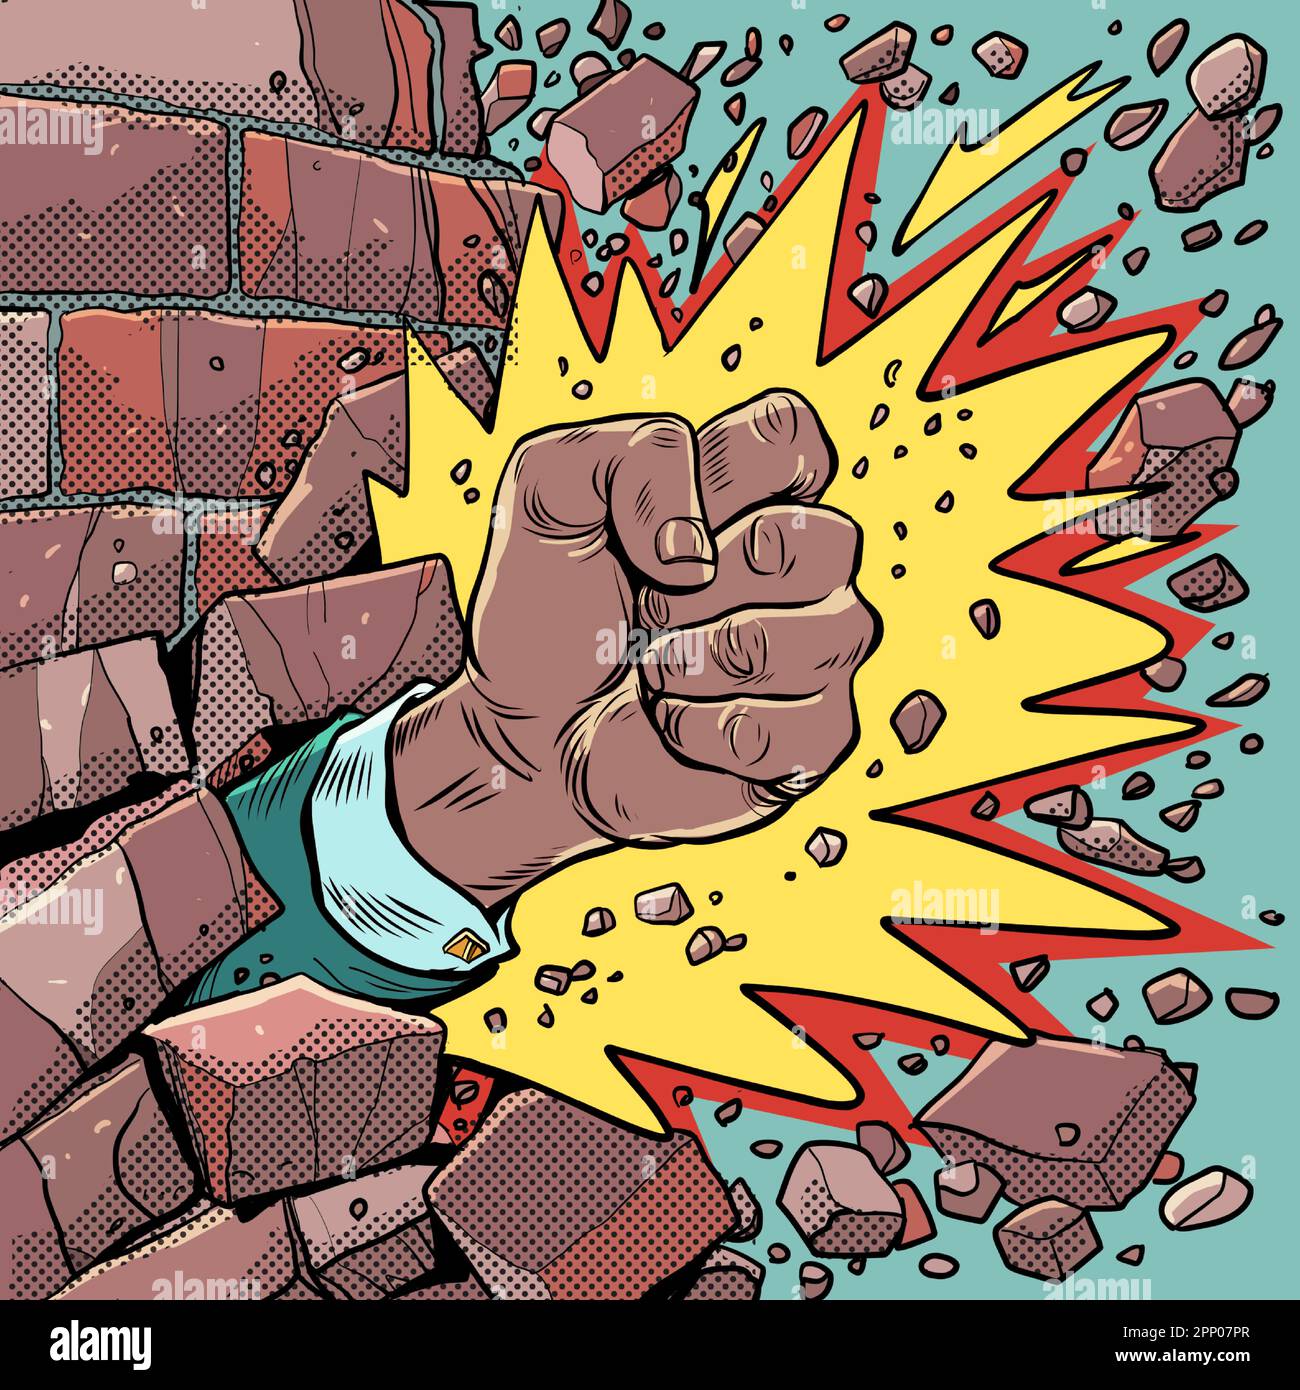 Durchbrechen Sie Barrieren. Stärke des Geistes. Eine afroamerikanische Männerfaust mit einer Explosion bricht die Mauer. Pop Art Retro Stock Vektor